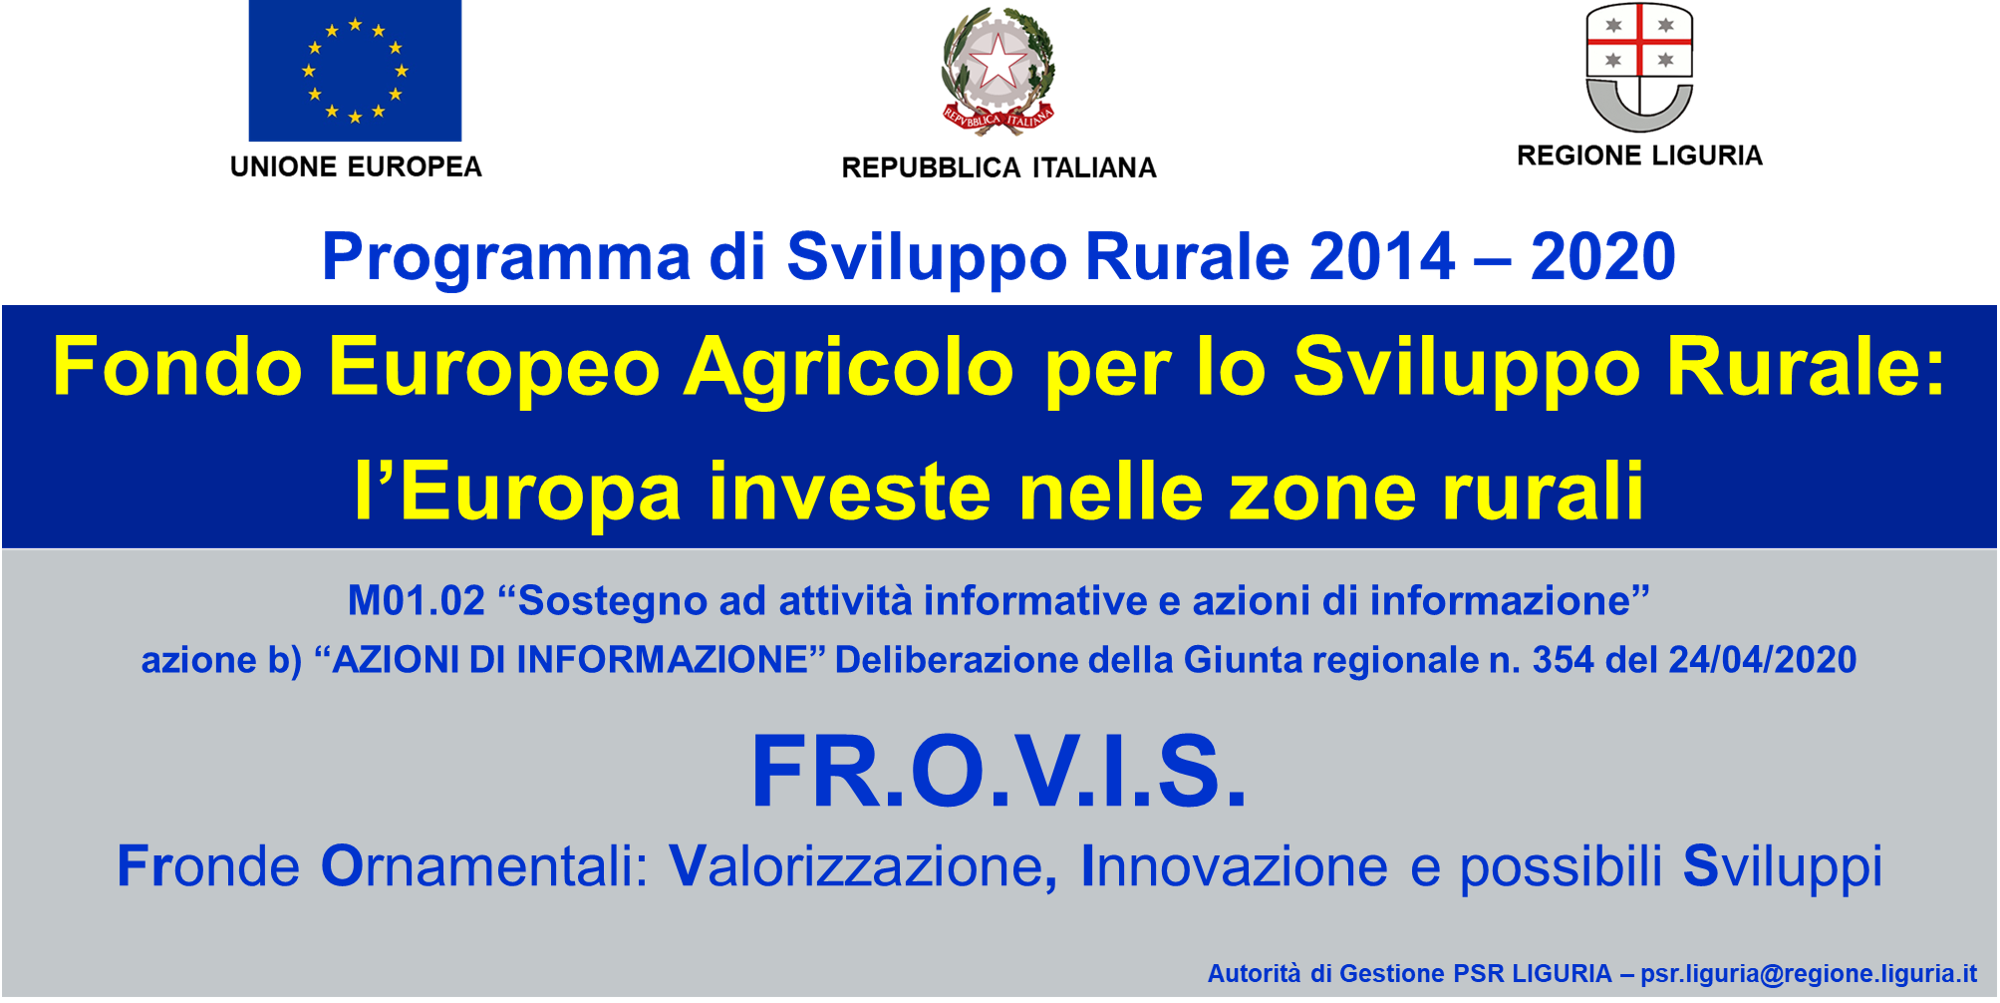 Avvio incontri Progetto FR.O.V.I.S. in Provincia di Savona